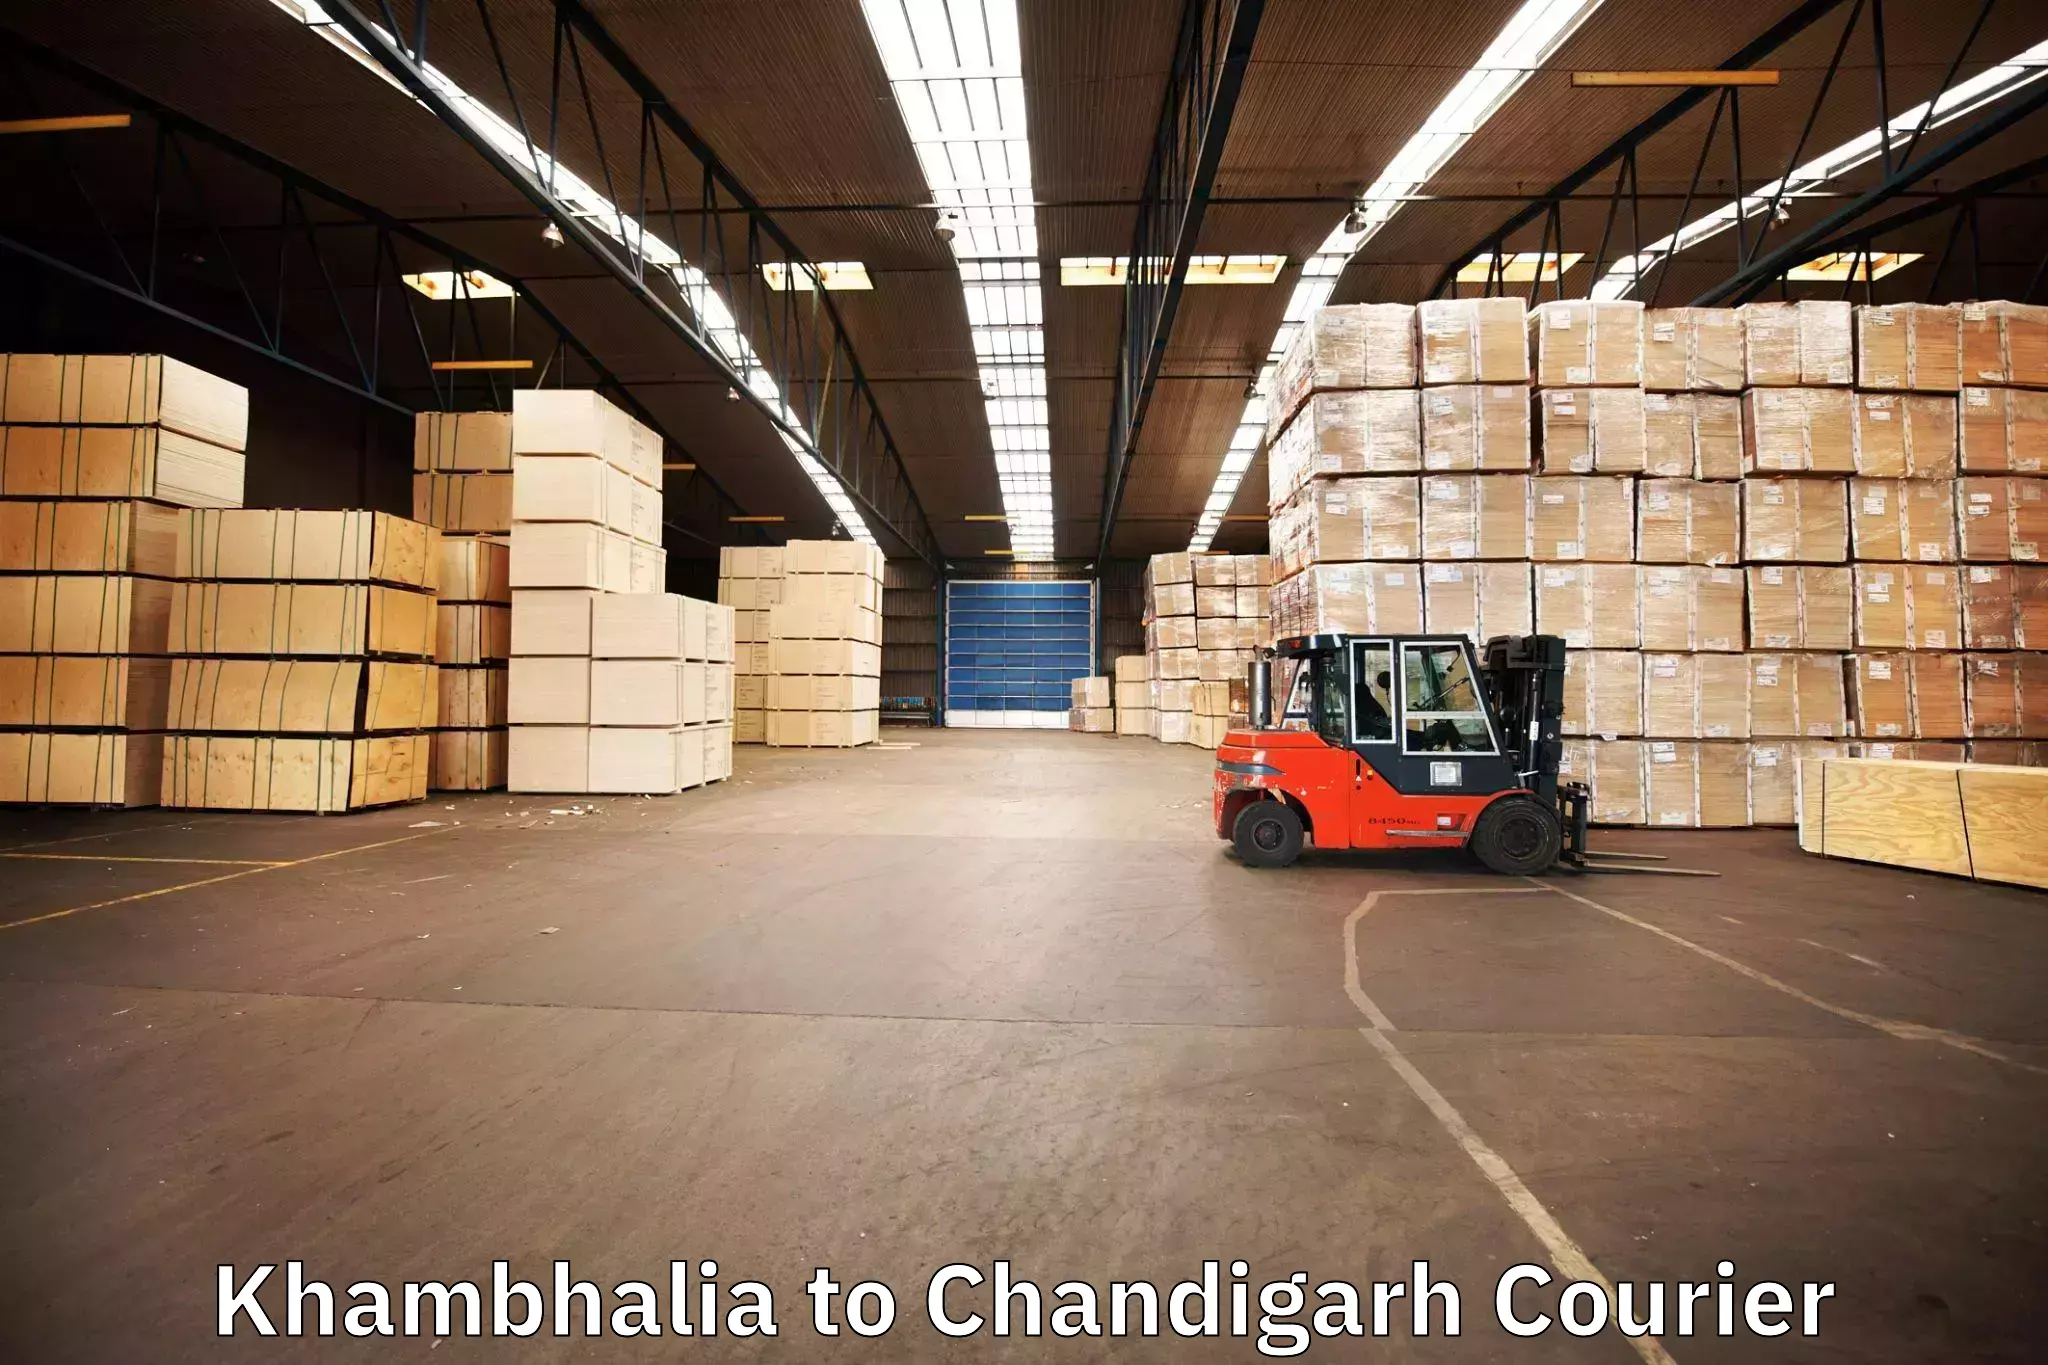 Trusted moving company Khambhalia to Panjab University Chandigarh